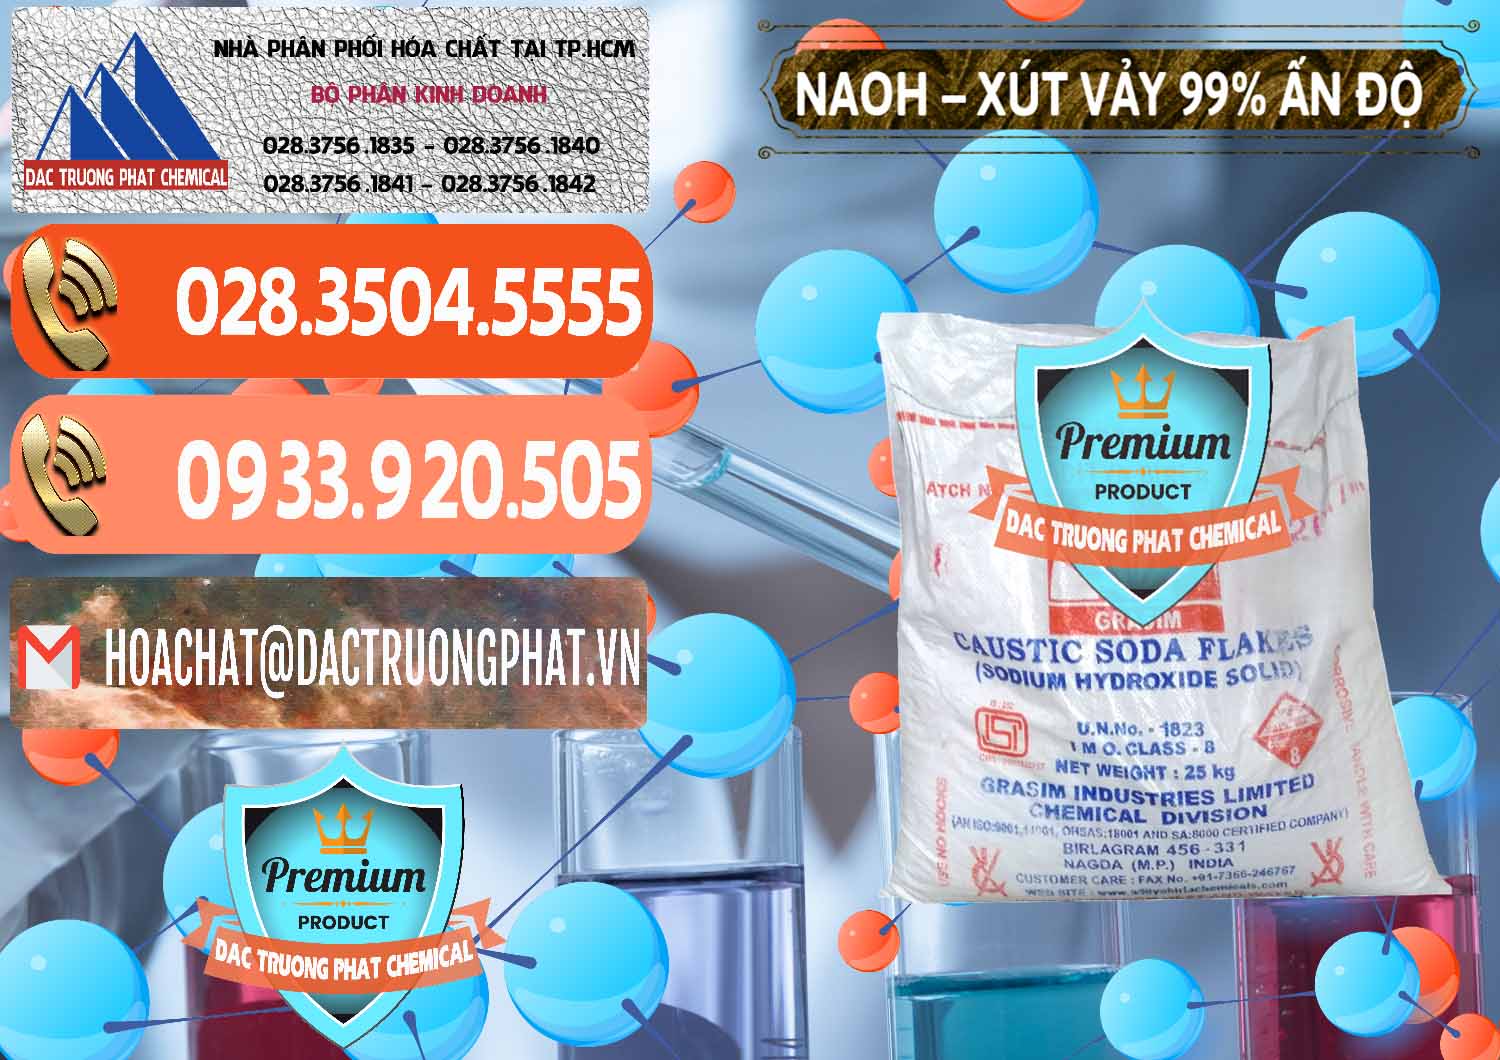 Cty bán ( cung cấp ) Xút Vảy - NaOH Vảy 99% Aditya Birla Grasim Ấn Độ India - 0171 - Phân phối và cung cấp hóa chất tại TP.HCM - hoachatmientay.com